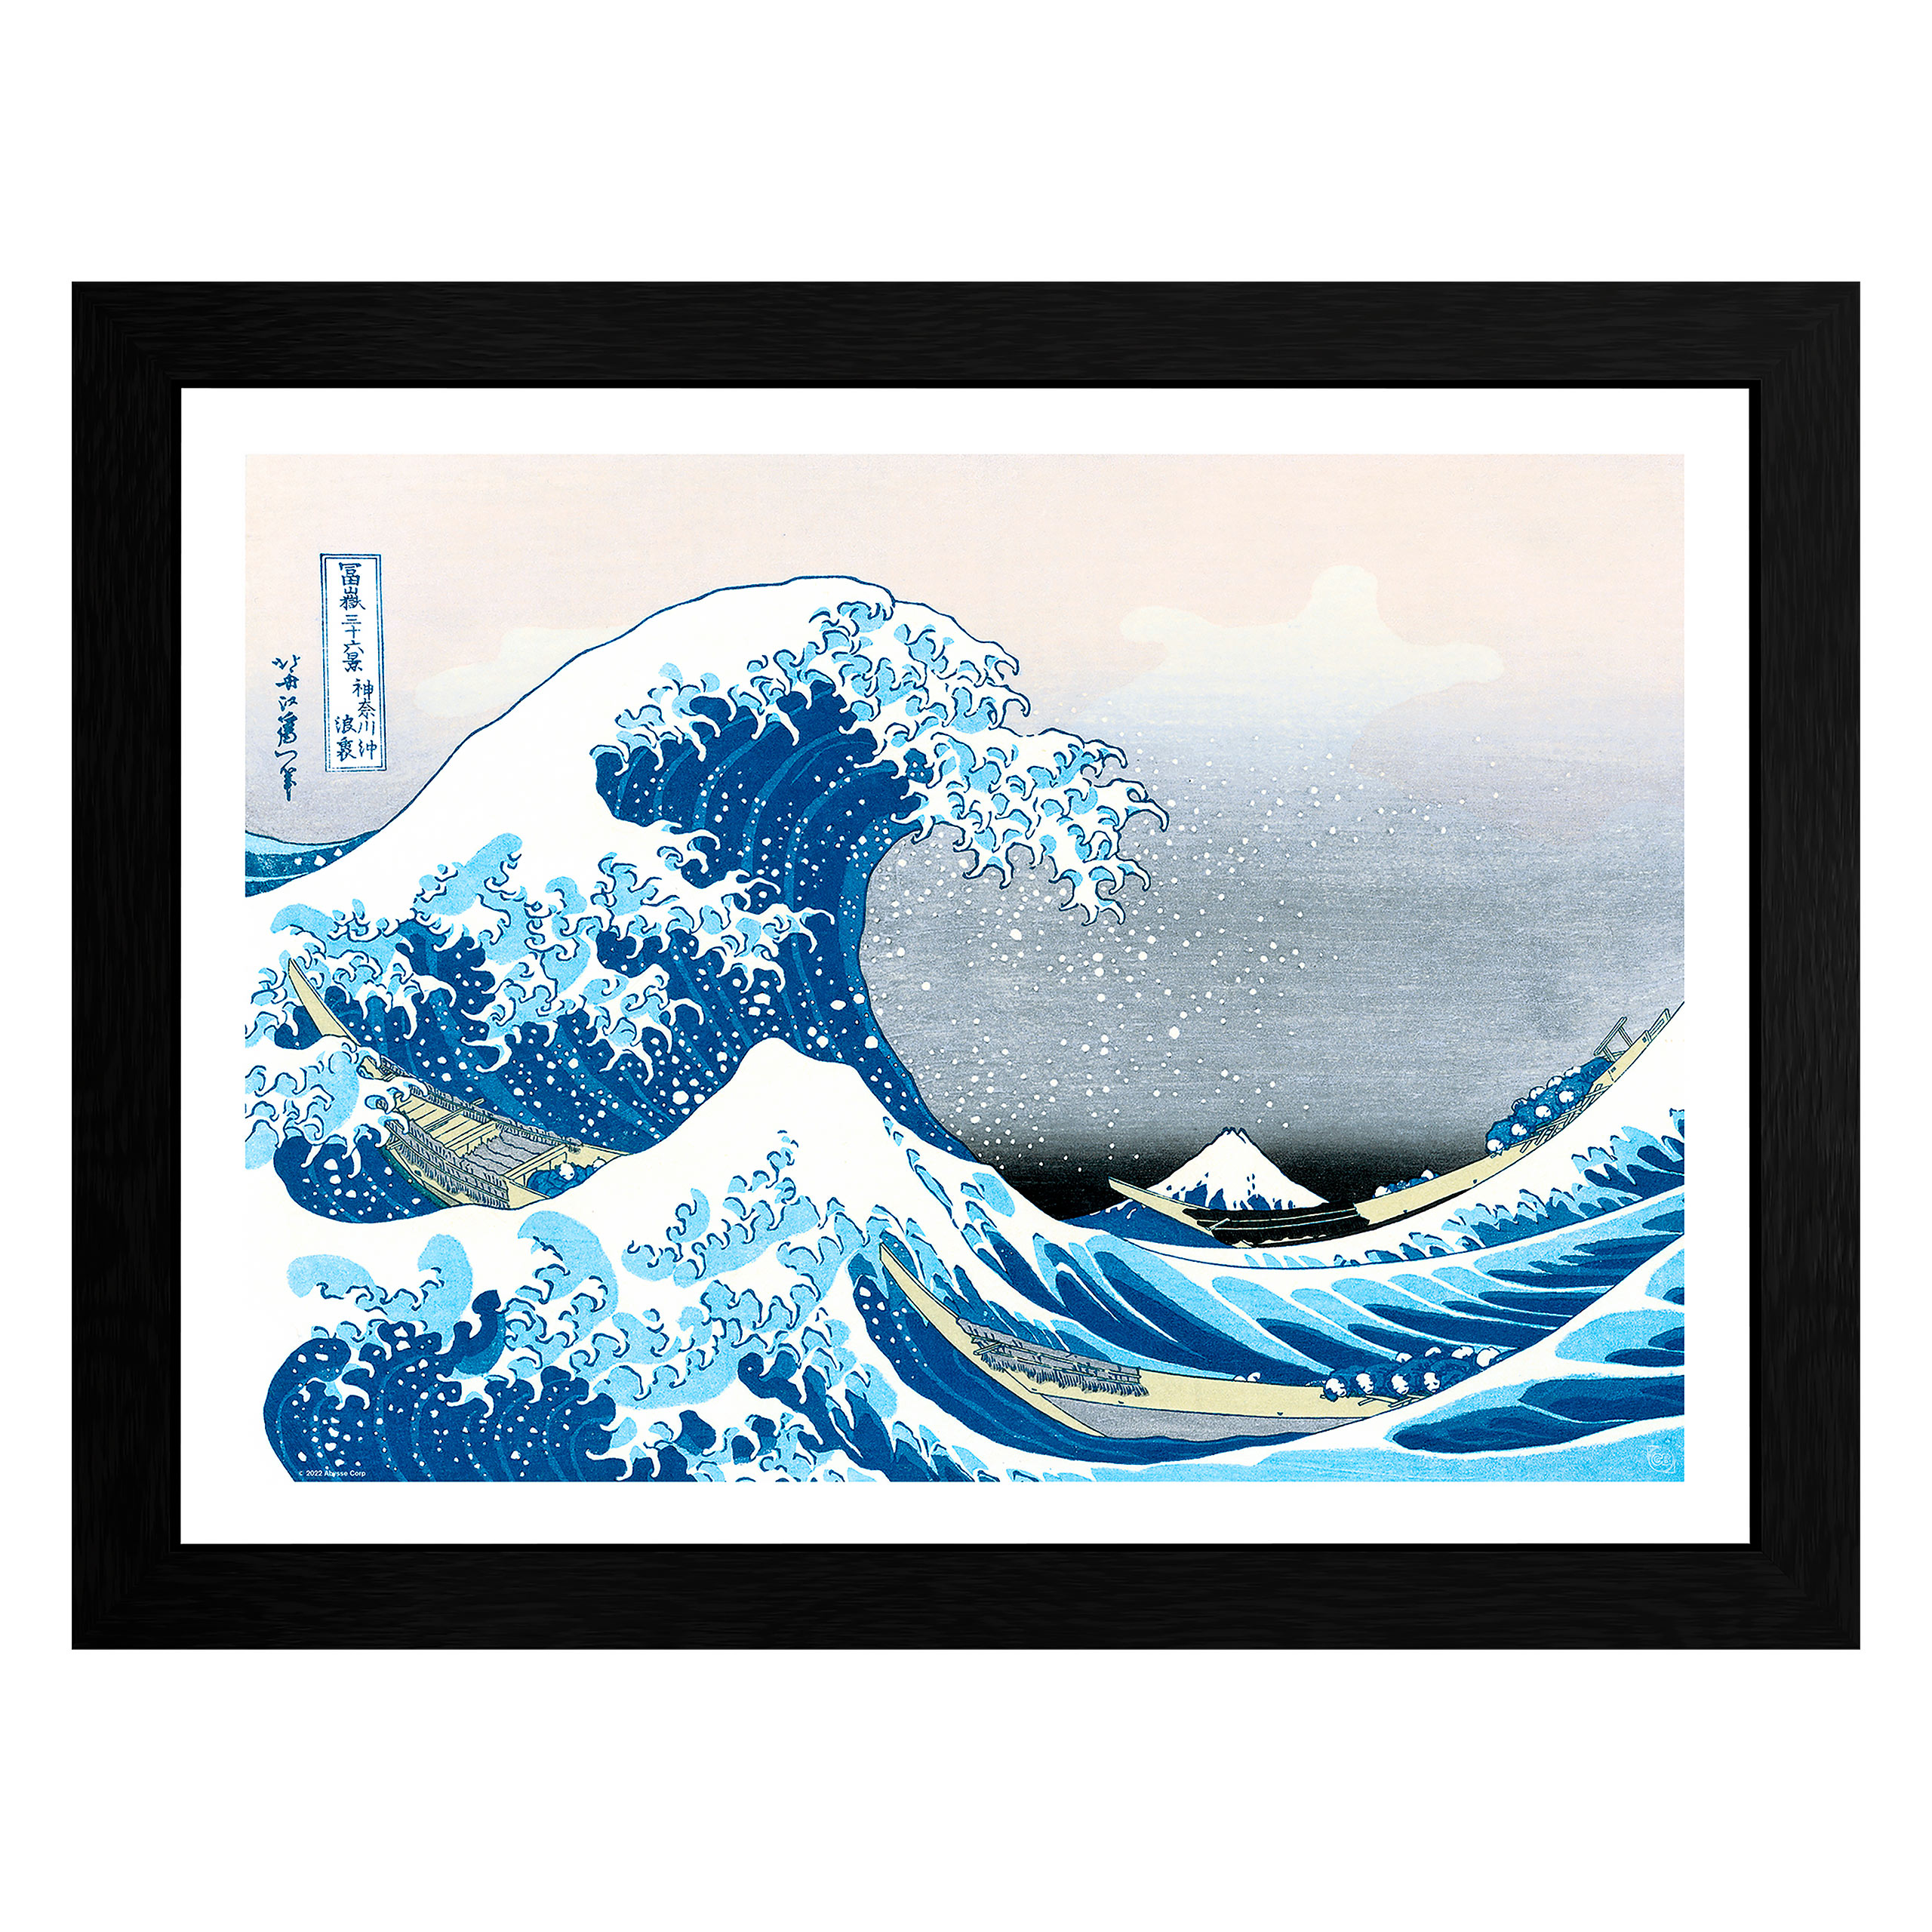 Japanese Wandbild - The Great Wave off Kanagawa